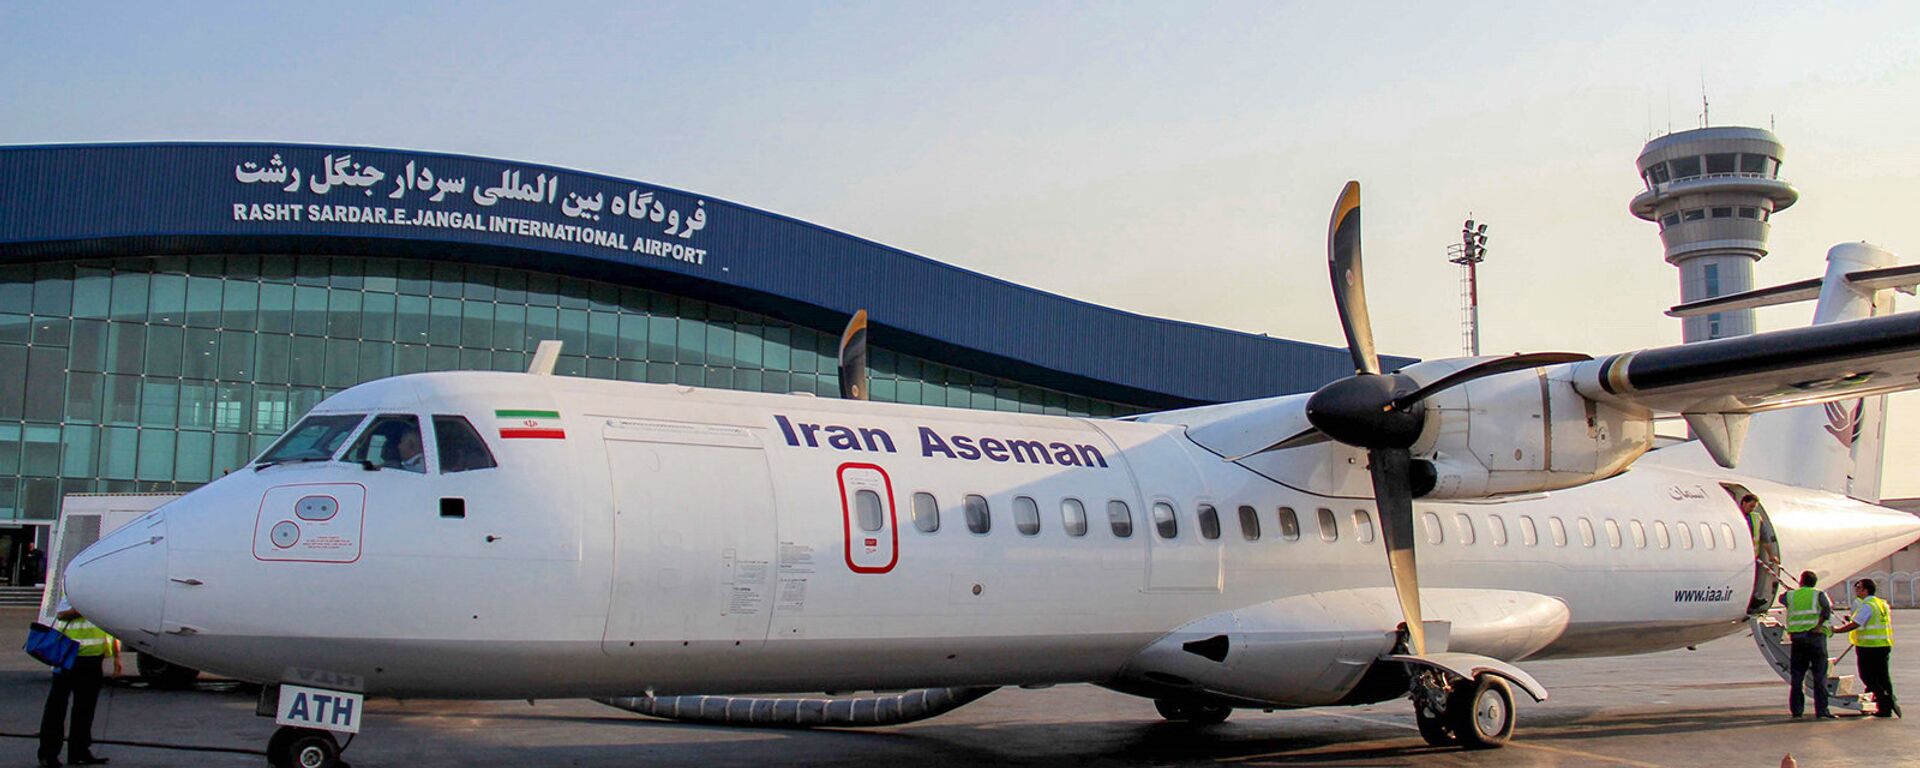 Самолет ATR 72 авиакомпании Iran Aseman Airlines в Международном аэропорту Решта, Иран - Sputnik Армения, 1920, 30.01.2021